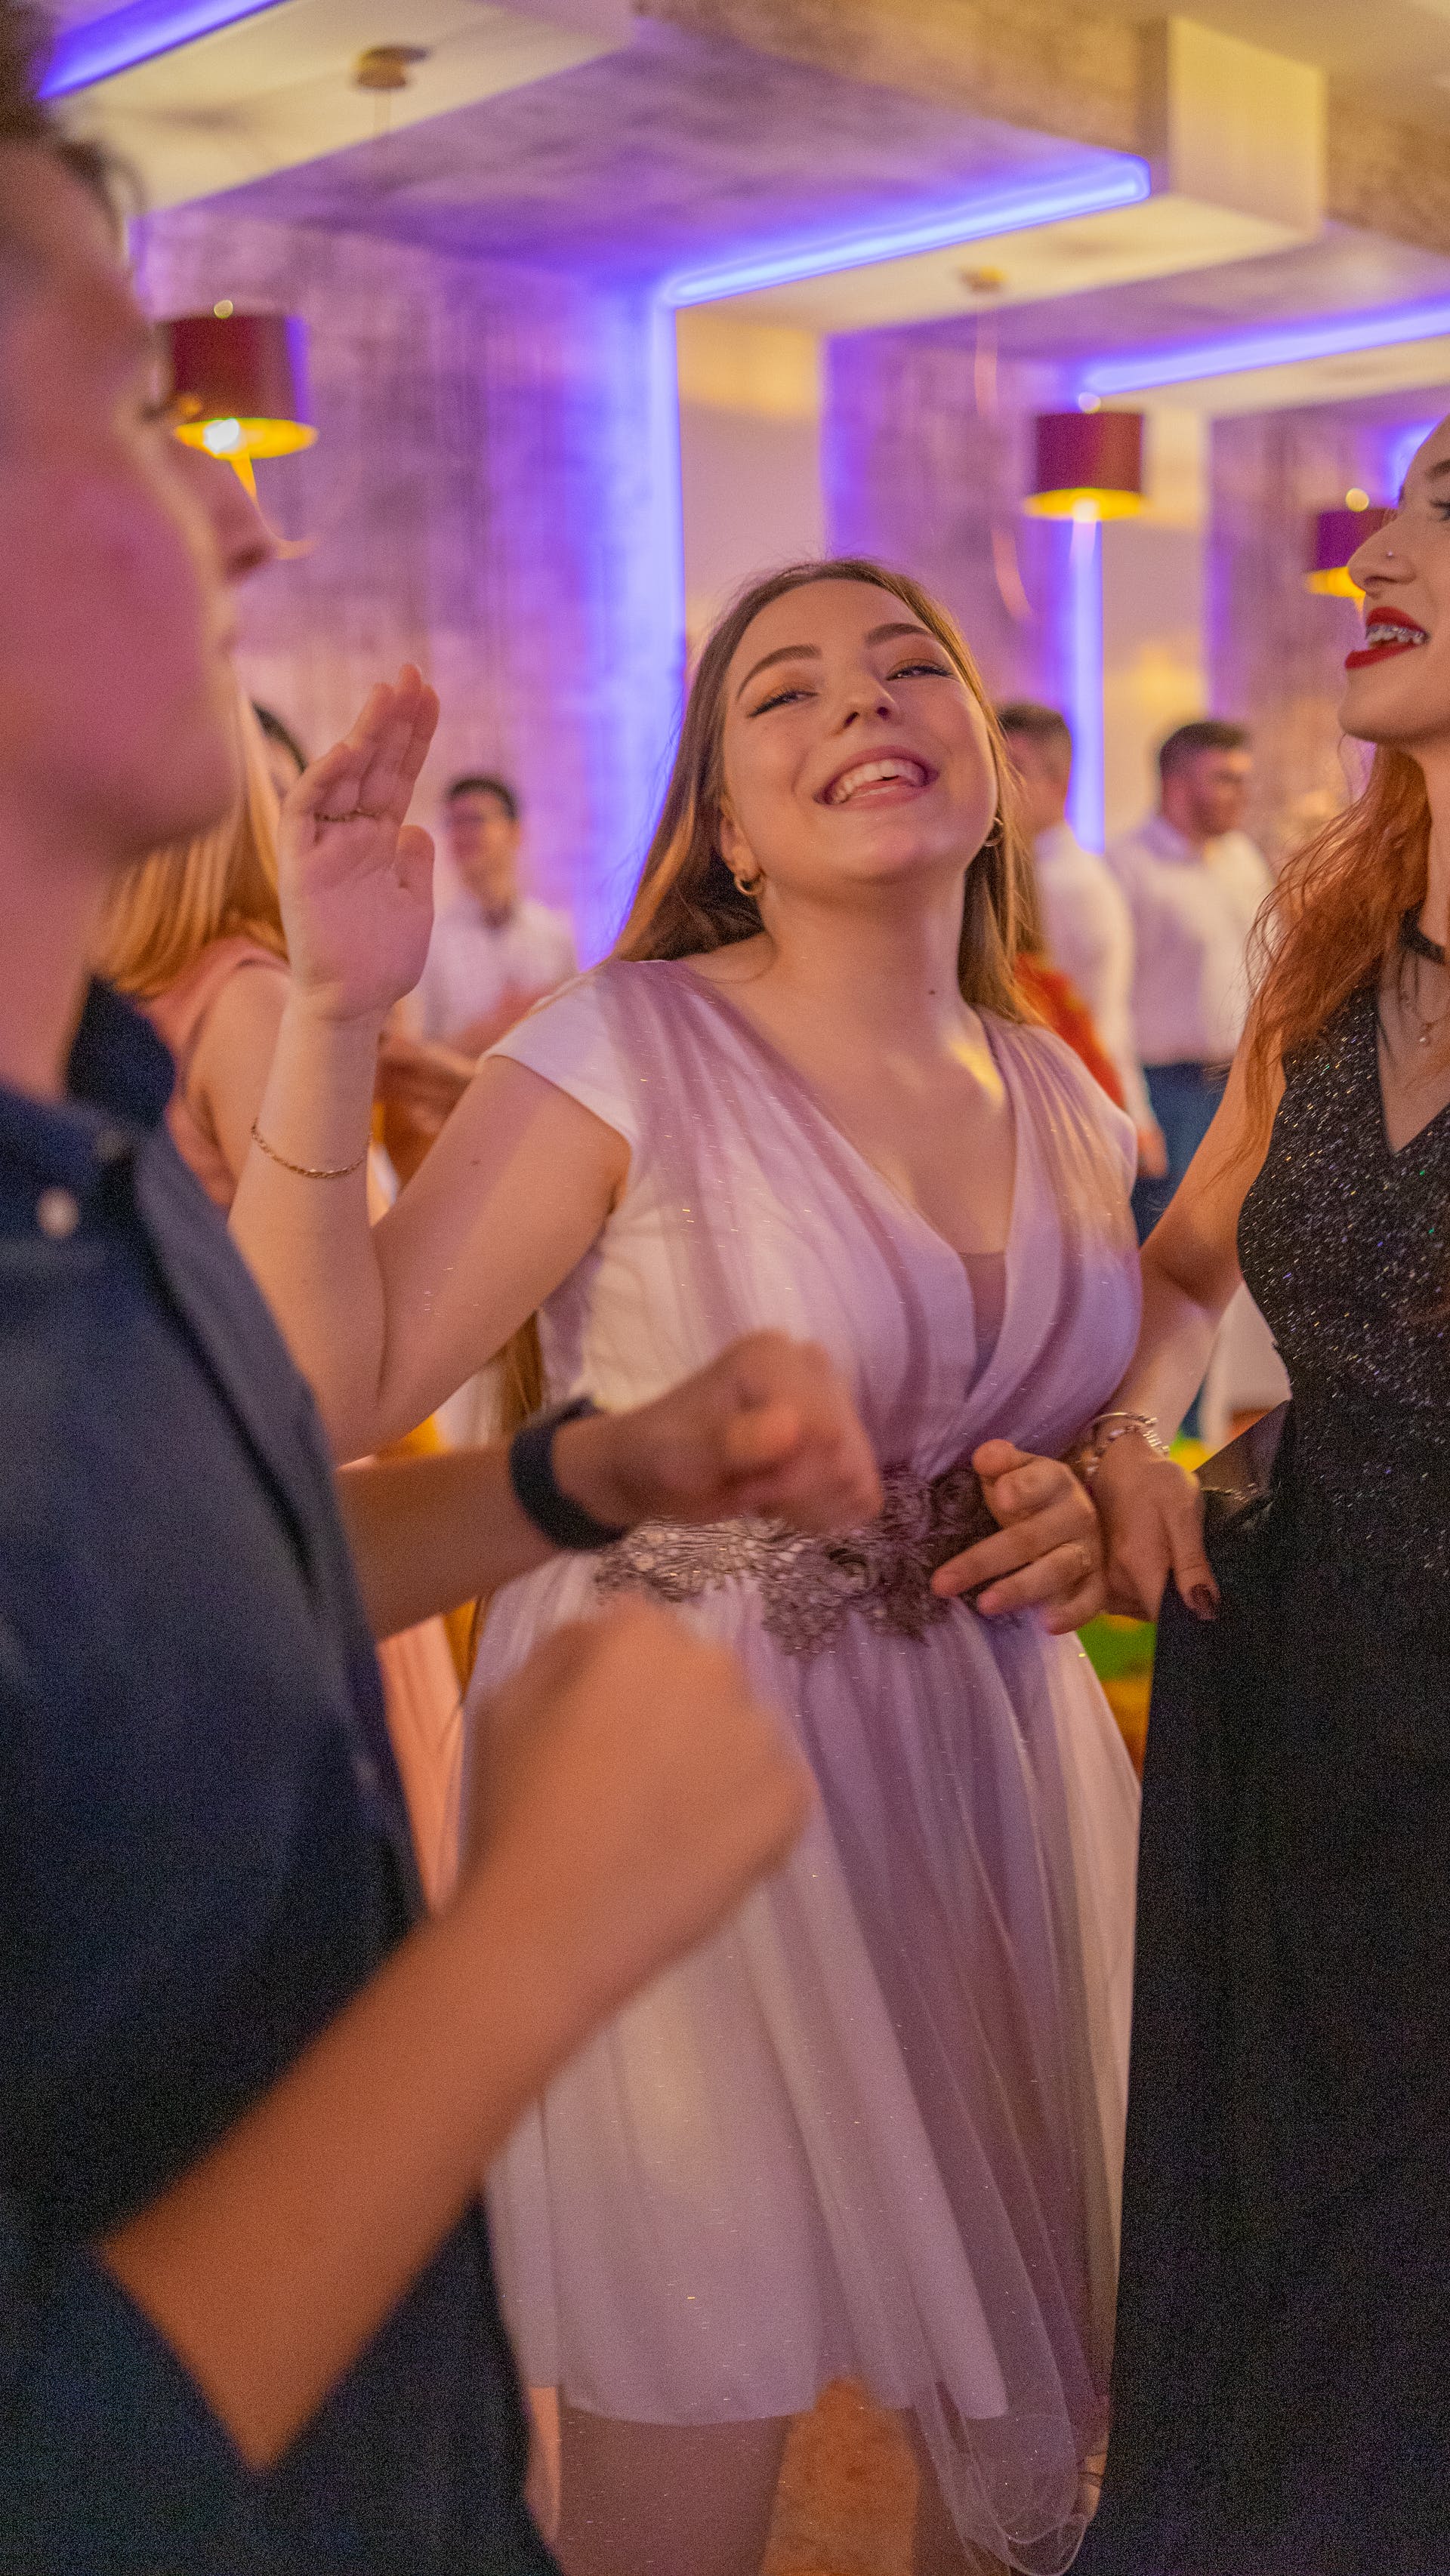 A woman dancing at a wedding reception | Source: Pexels